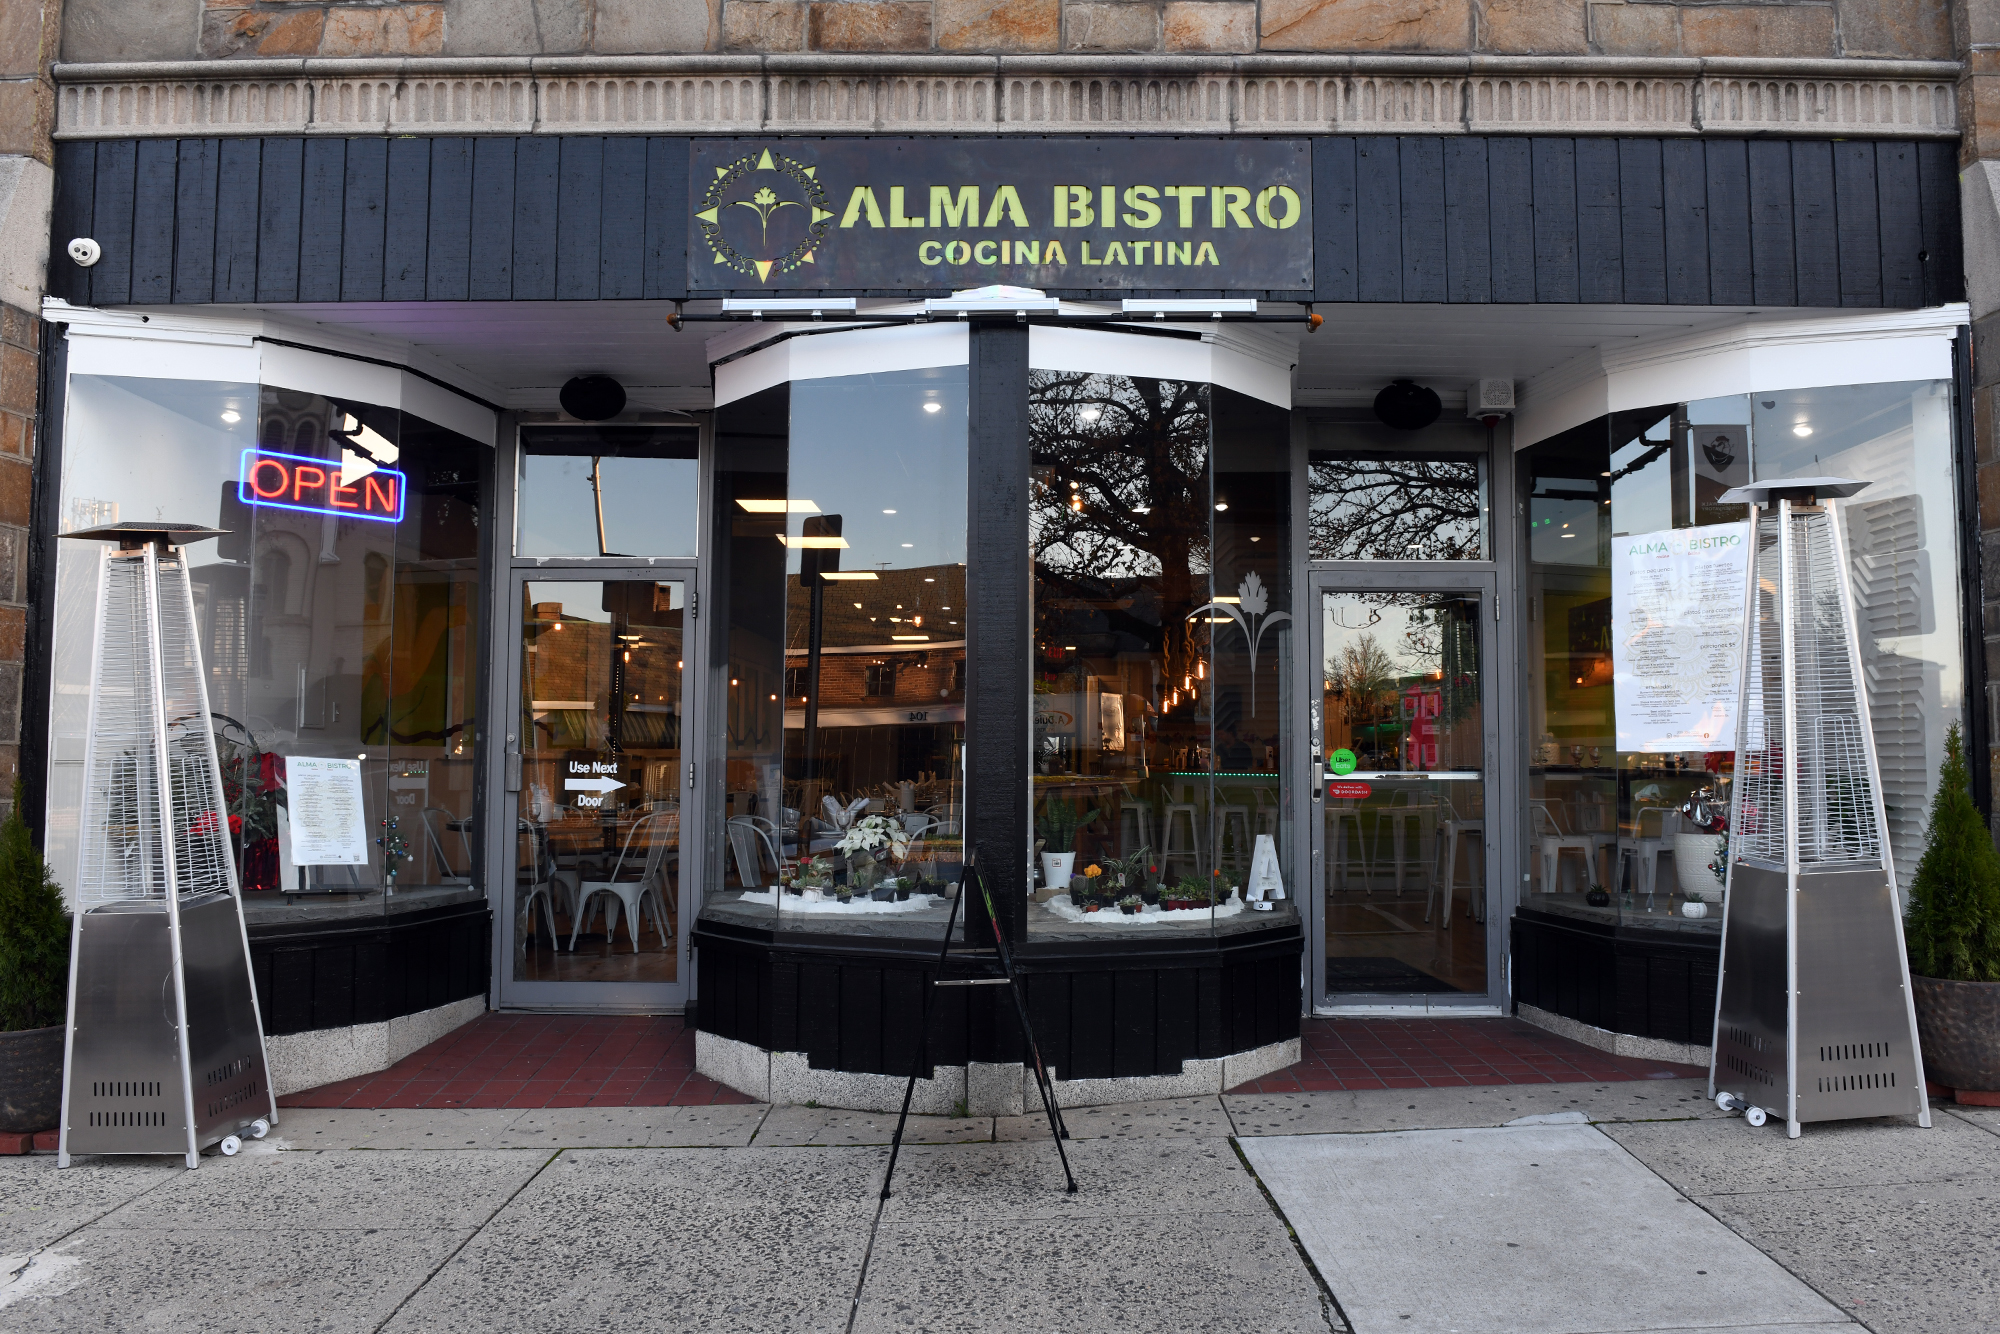 in a Bistro, Nuevo-Latino restaurant, Alma opens Norwalk